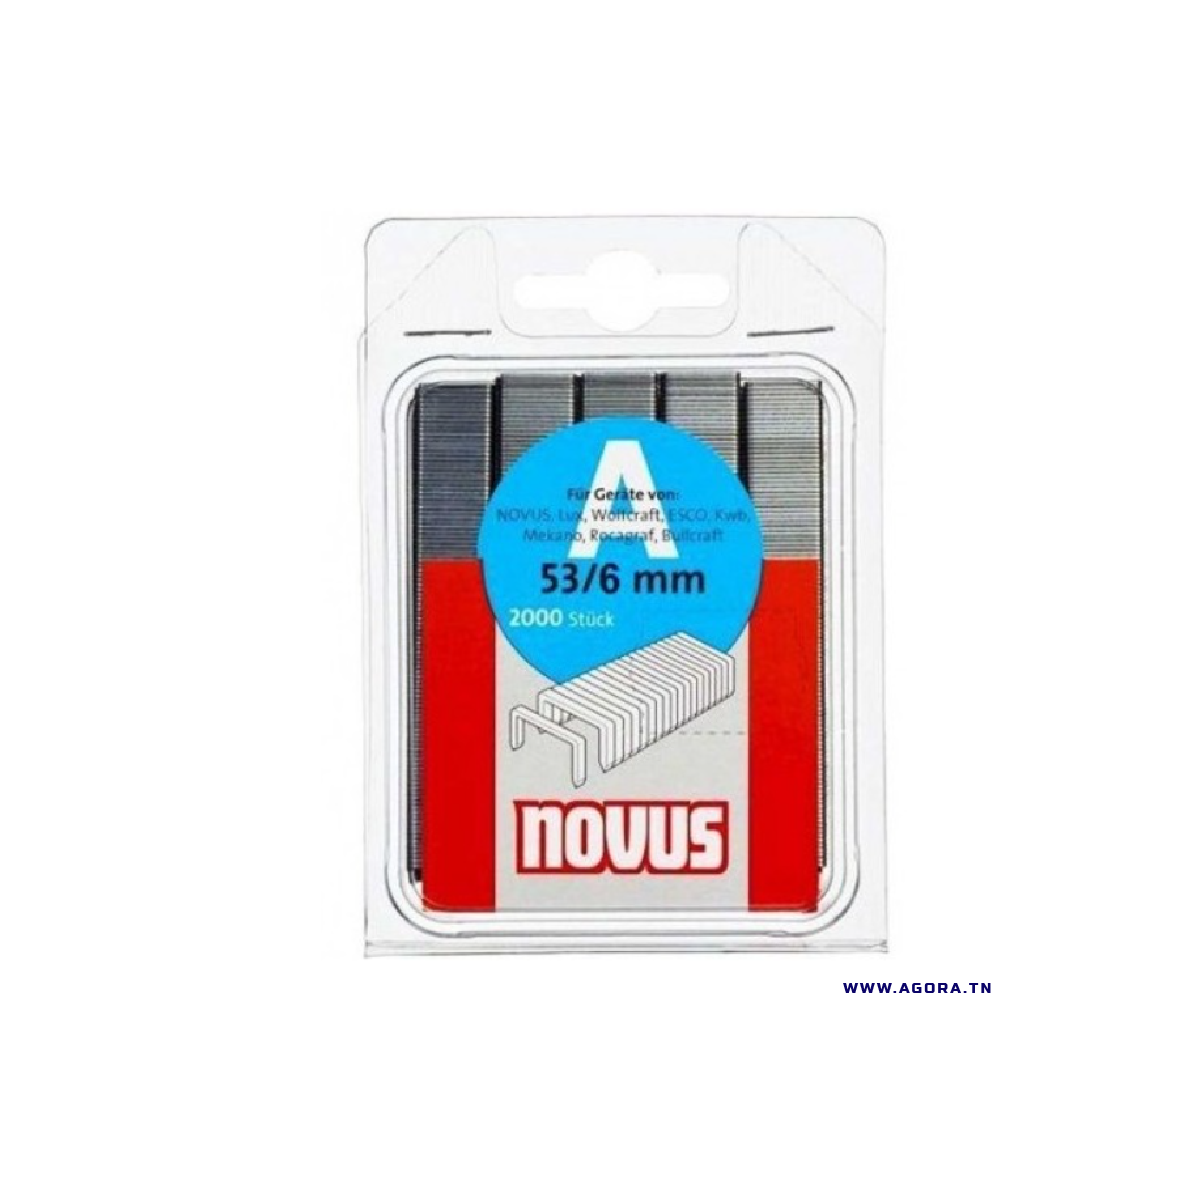 AGRAFES NOVUS 53/6 | Agora.tn